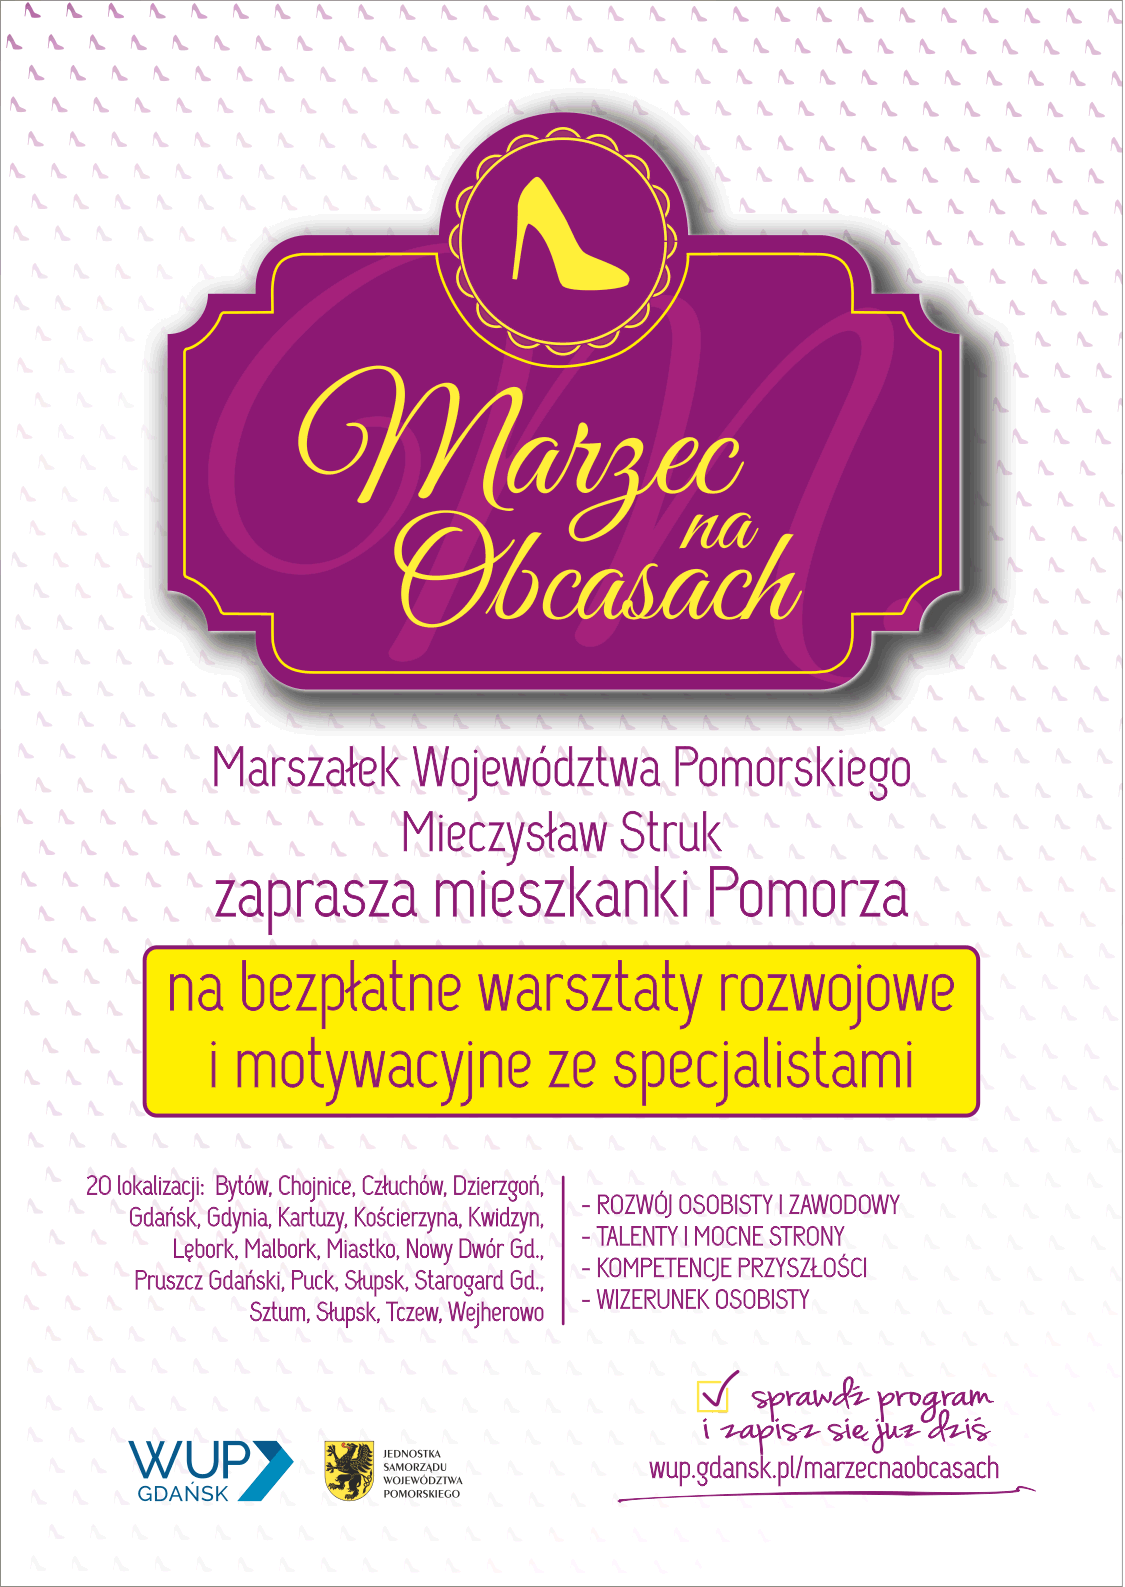 Plakat Marzec na obcasach Zaproszenie Marszałka Województwa Pomorskiego do udziału w bezpłatnych warsztatach rozwojowych i motywacyjnych dla mieszkanek Pomorza